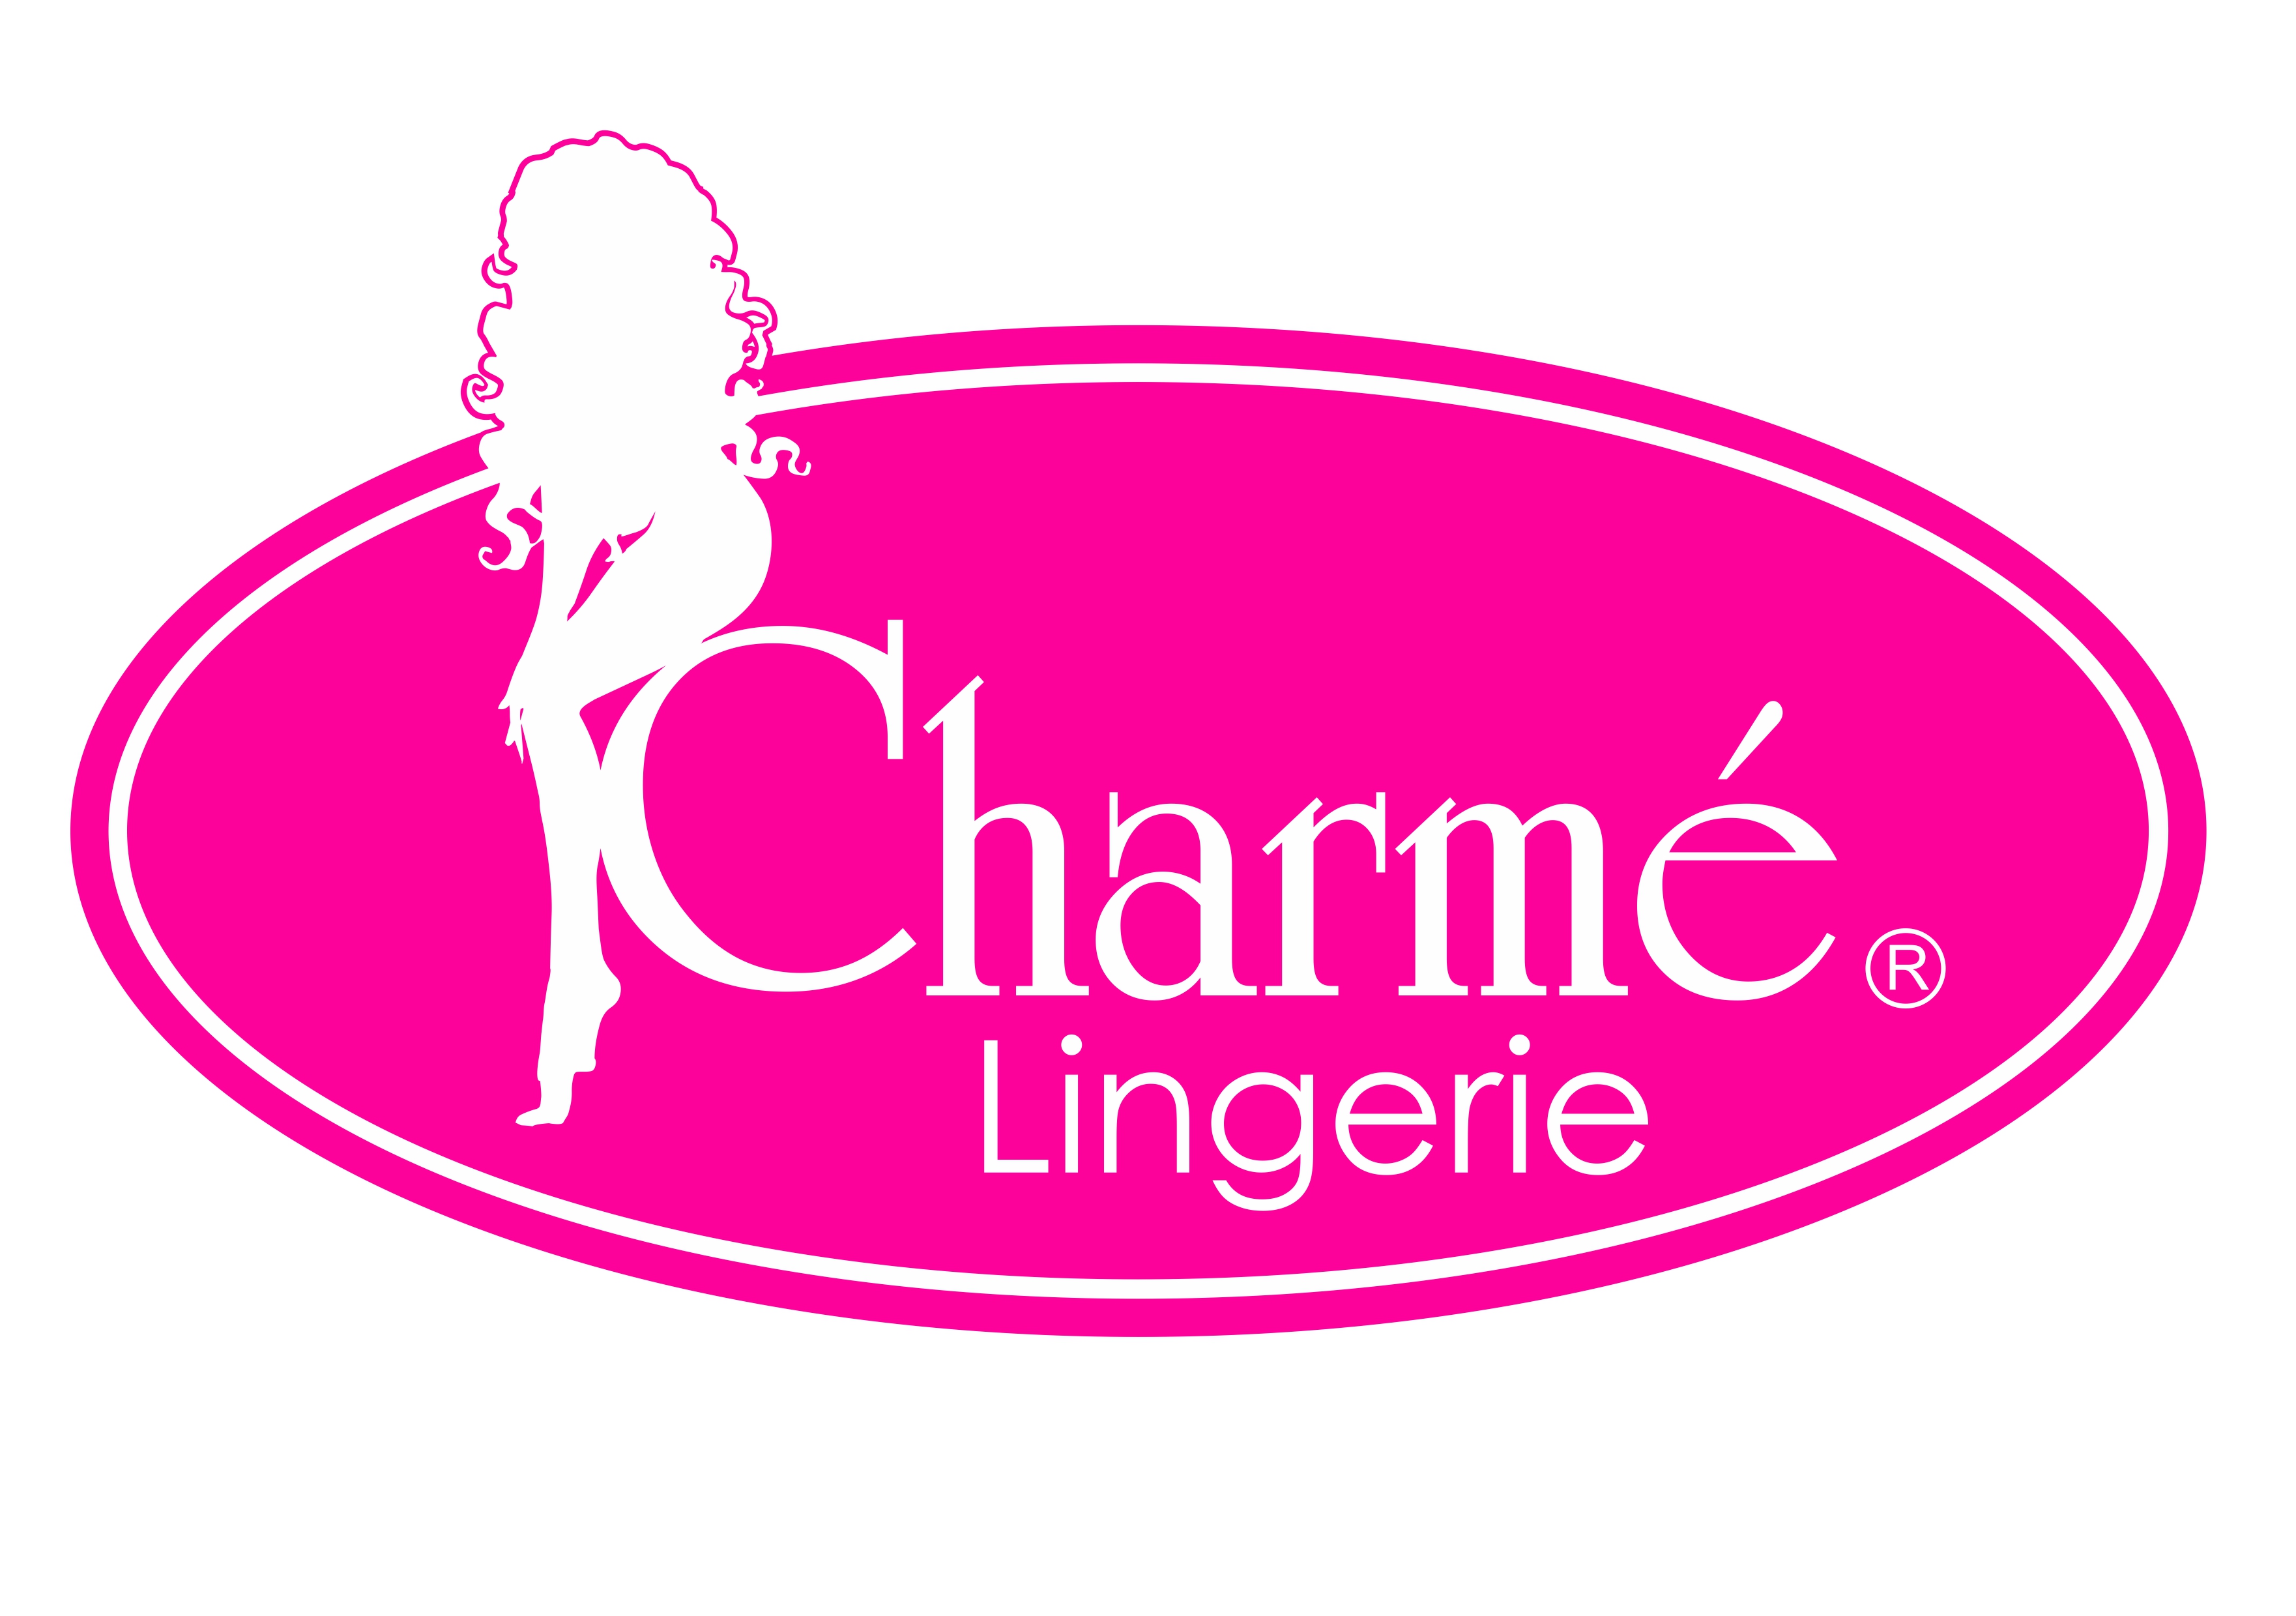 Charme Lingerie